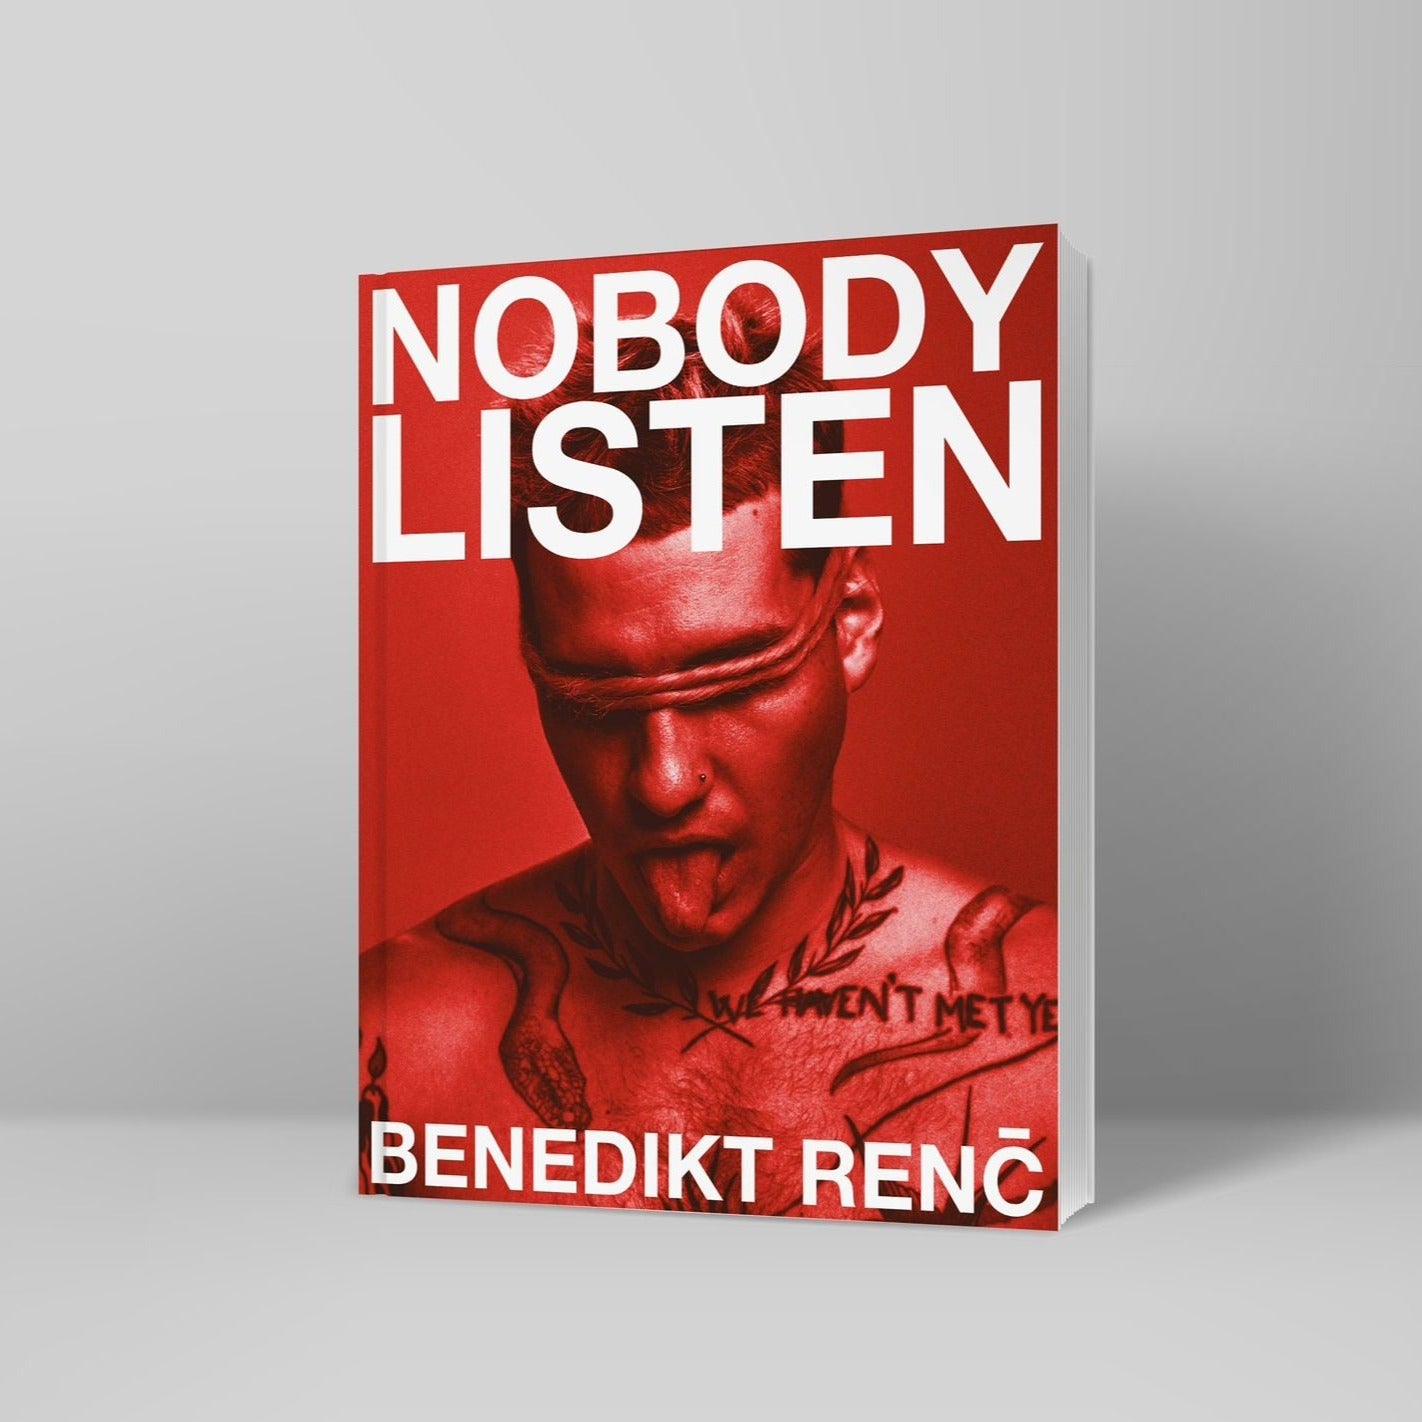 NobodyListen by Benedikt Renč